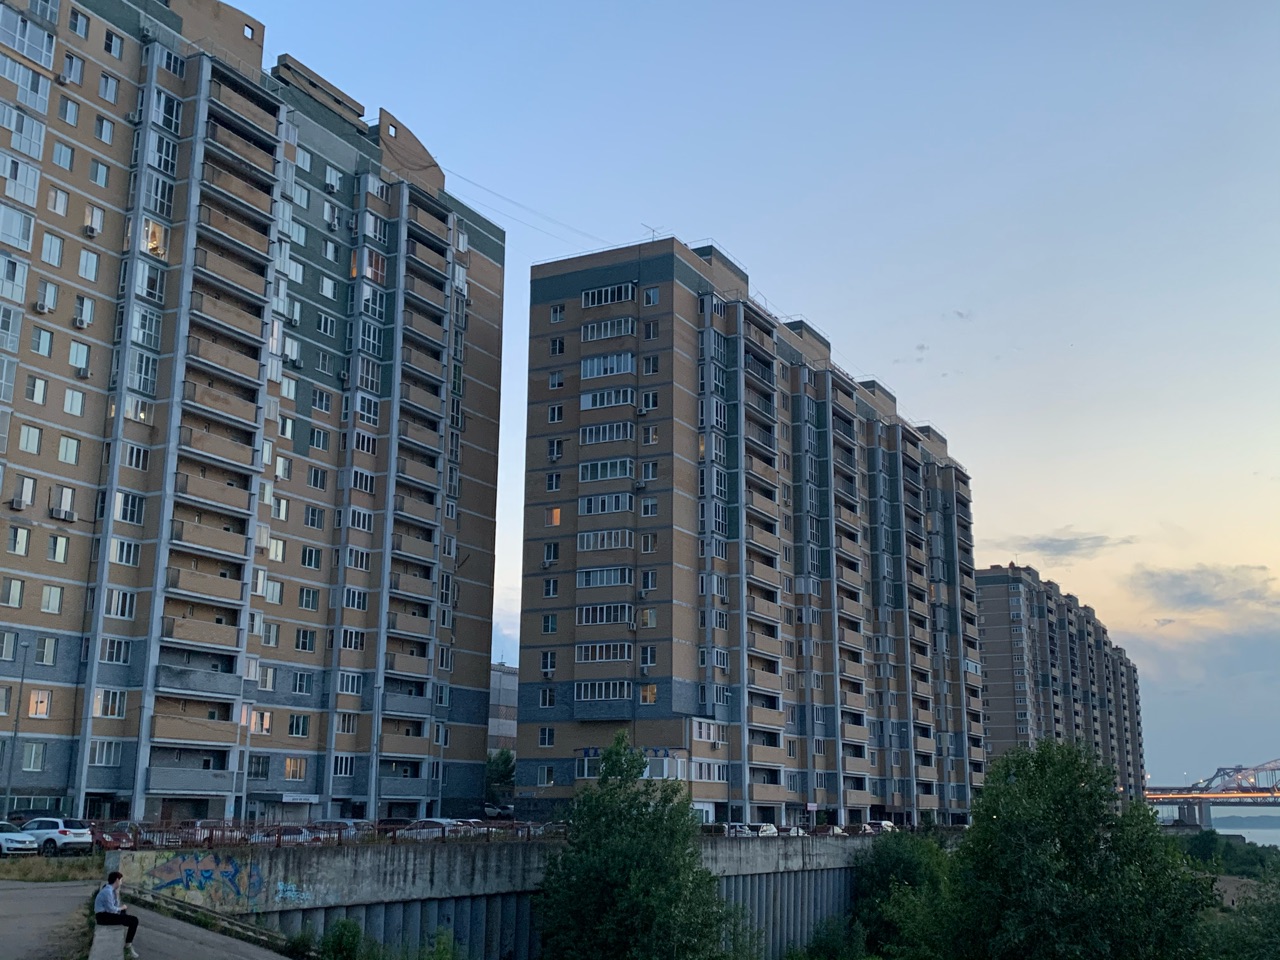 22,2 тысячи нижегородских семей ожидают получения жилья более 10 лет - фото 1